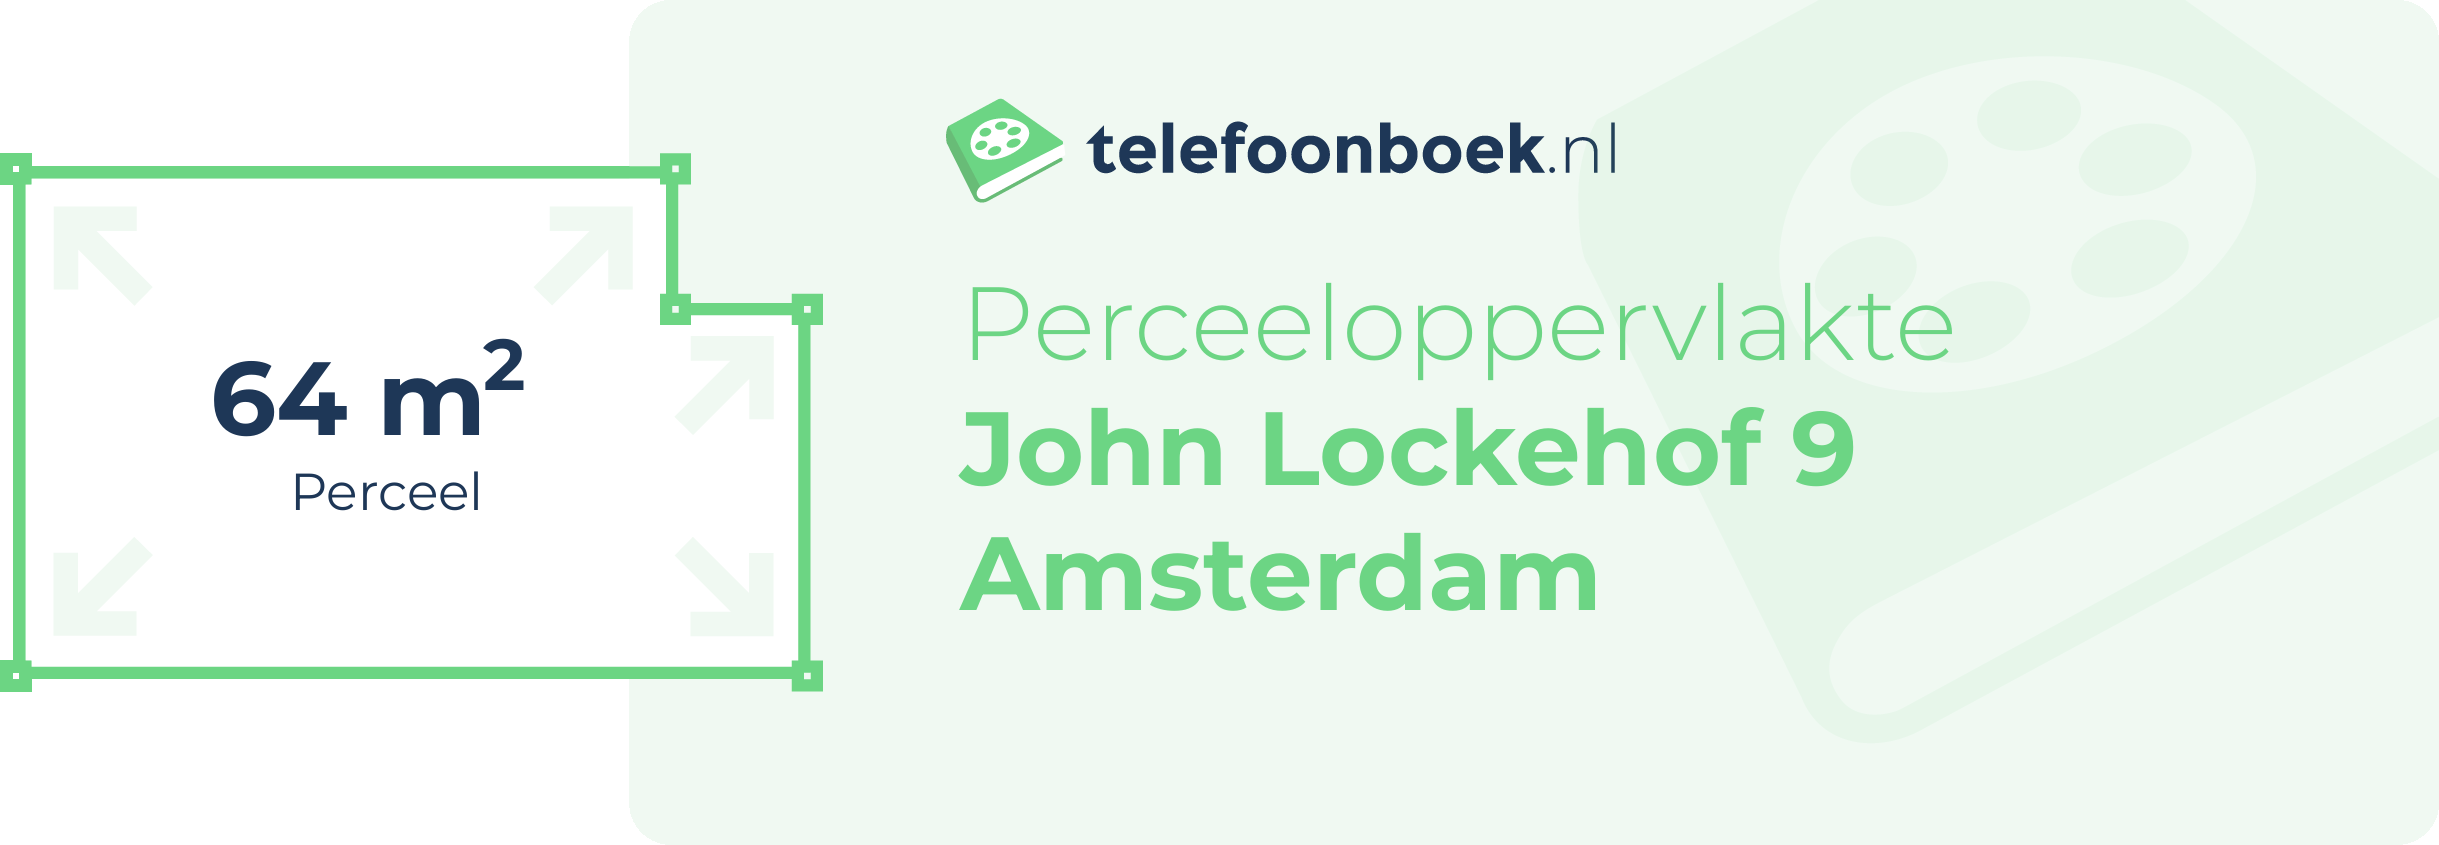 Perceeloppervlakte John Lockehof 9 Amsterdam